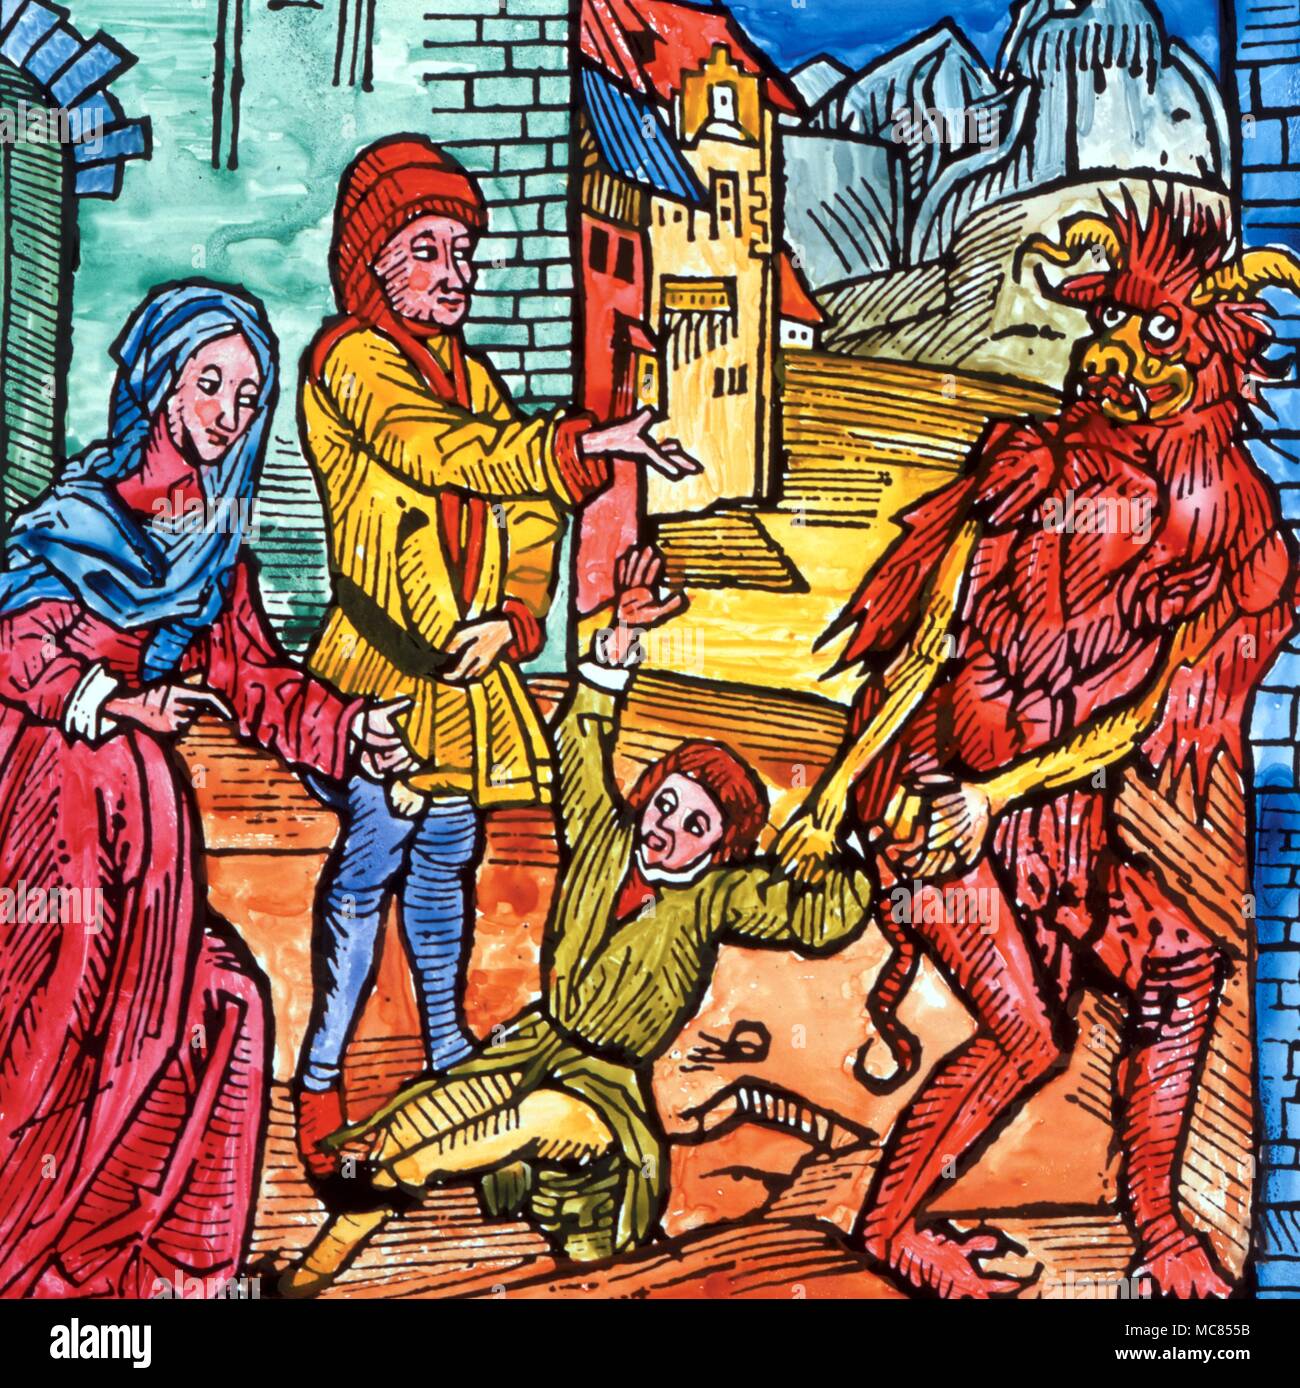 Vendita demoniaca immagine medievale (originale la xilografia da Dürer) mostrando i genitori vendono il loro figlio al diavolo. Originariamente, inizi del XVI secolo. Foto Stock